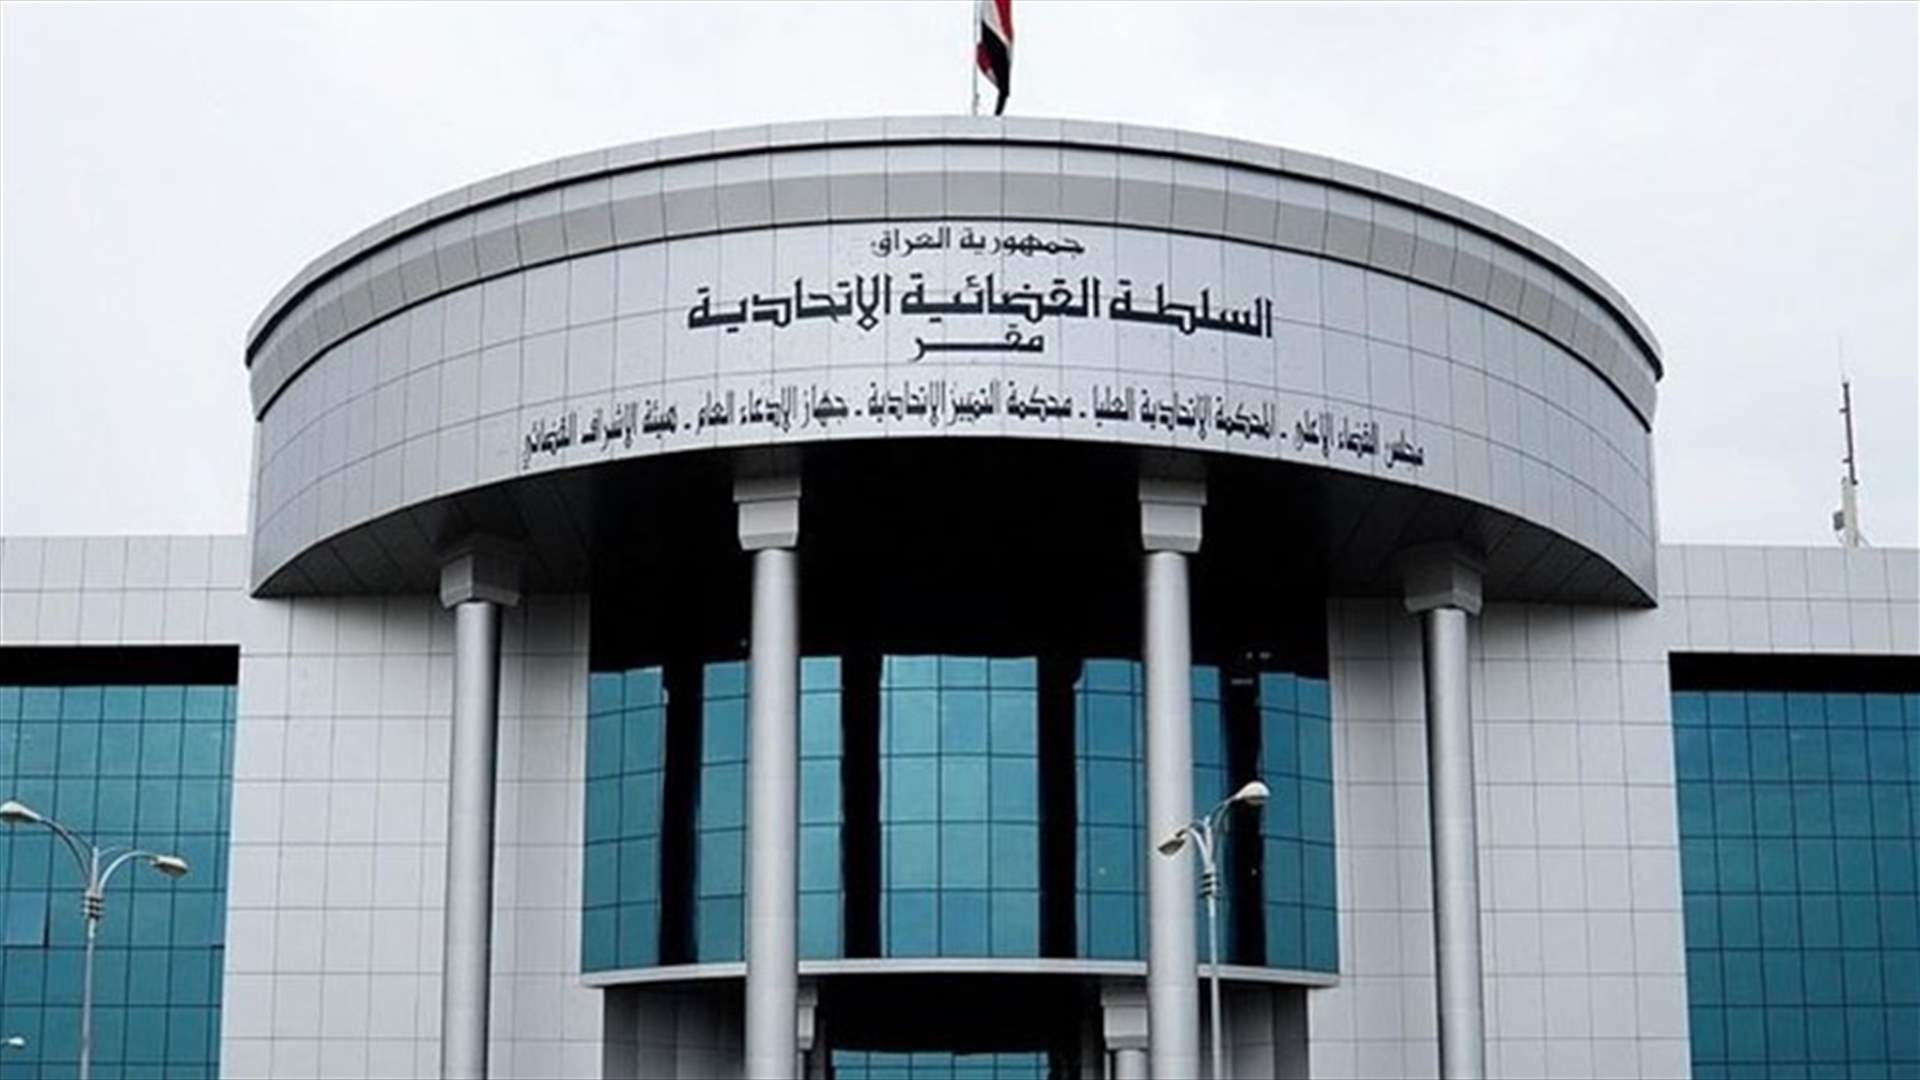 المحكمة العليا في العراق تعيد منصب نائب الرئيس الذي ألغاه العبادي